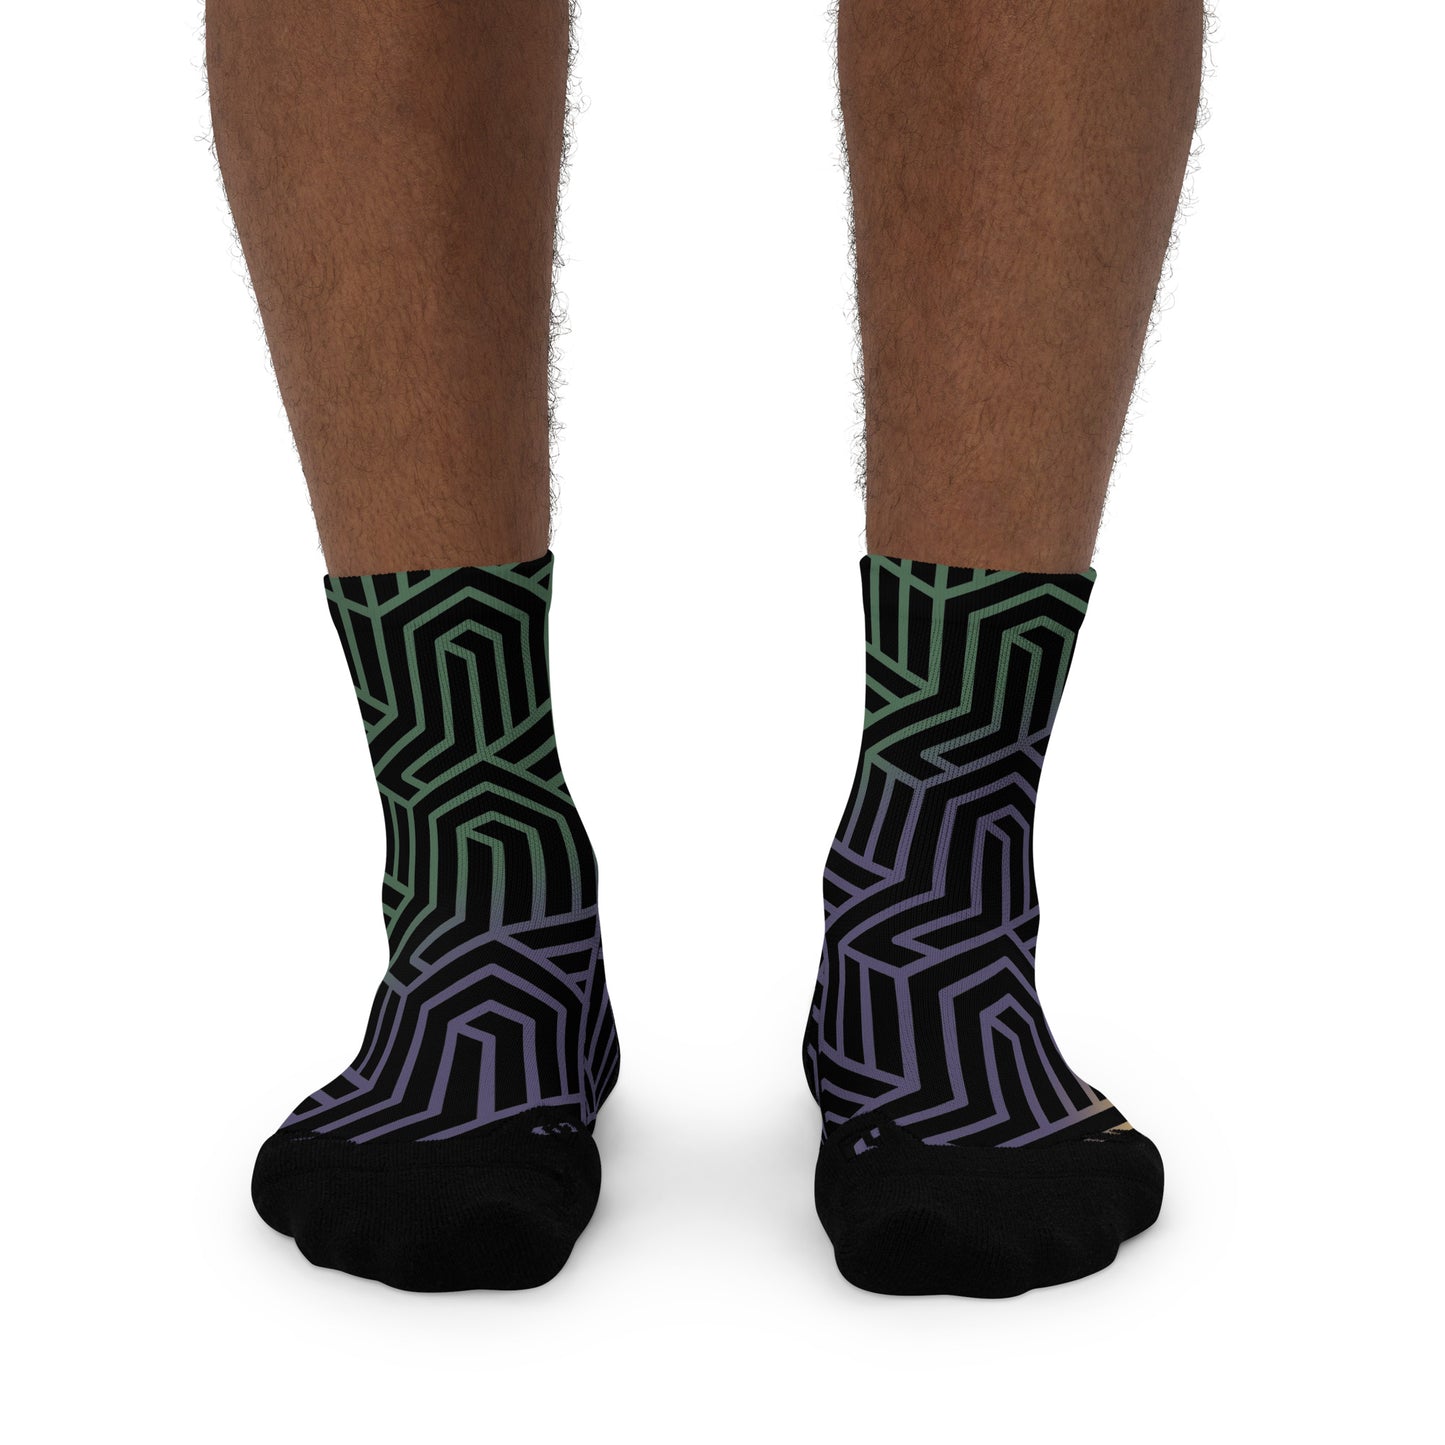 Sockadelic Hosier Lane 01 Ankle socks